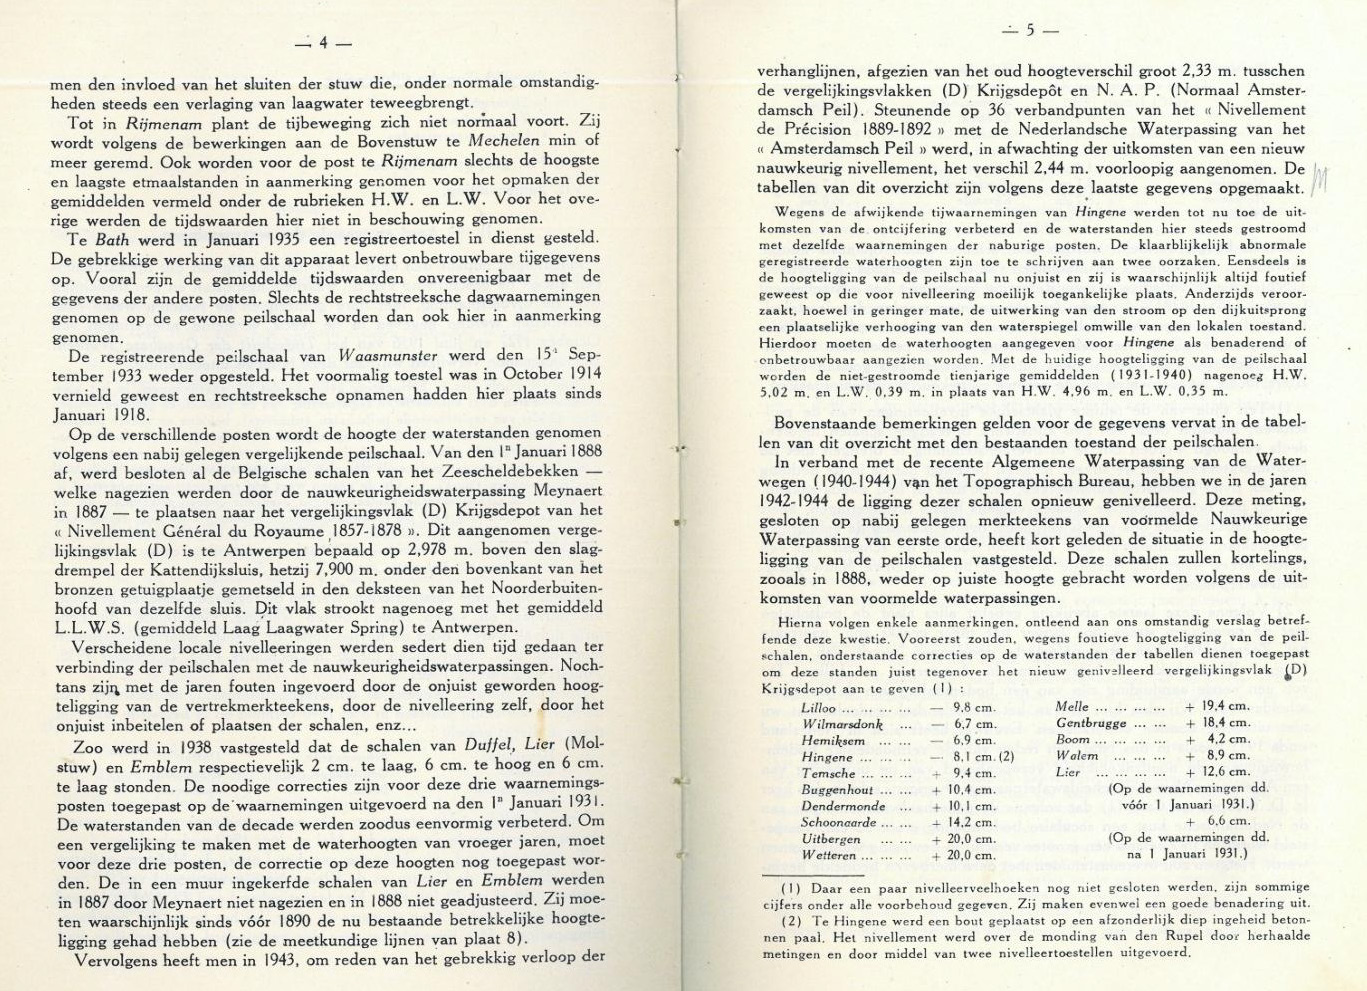 Figuur 1 - Uitsnede uit het tienjarig overzicht van 1931-1940 (Vekemans, 1946).